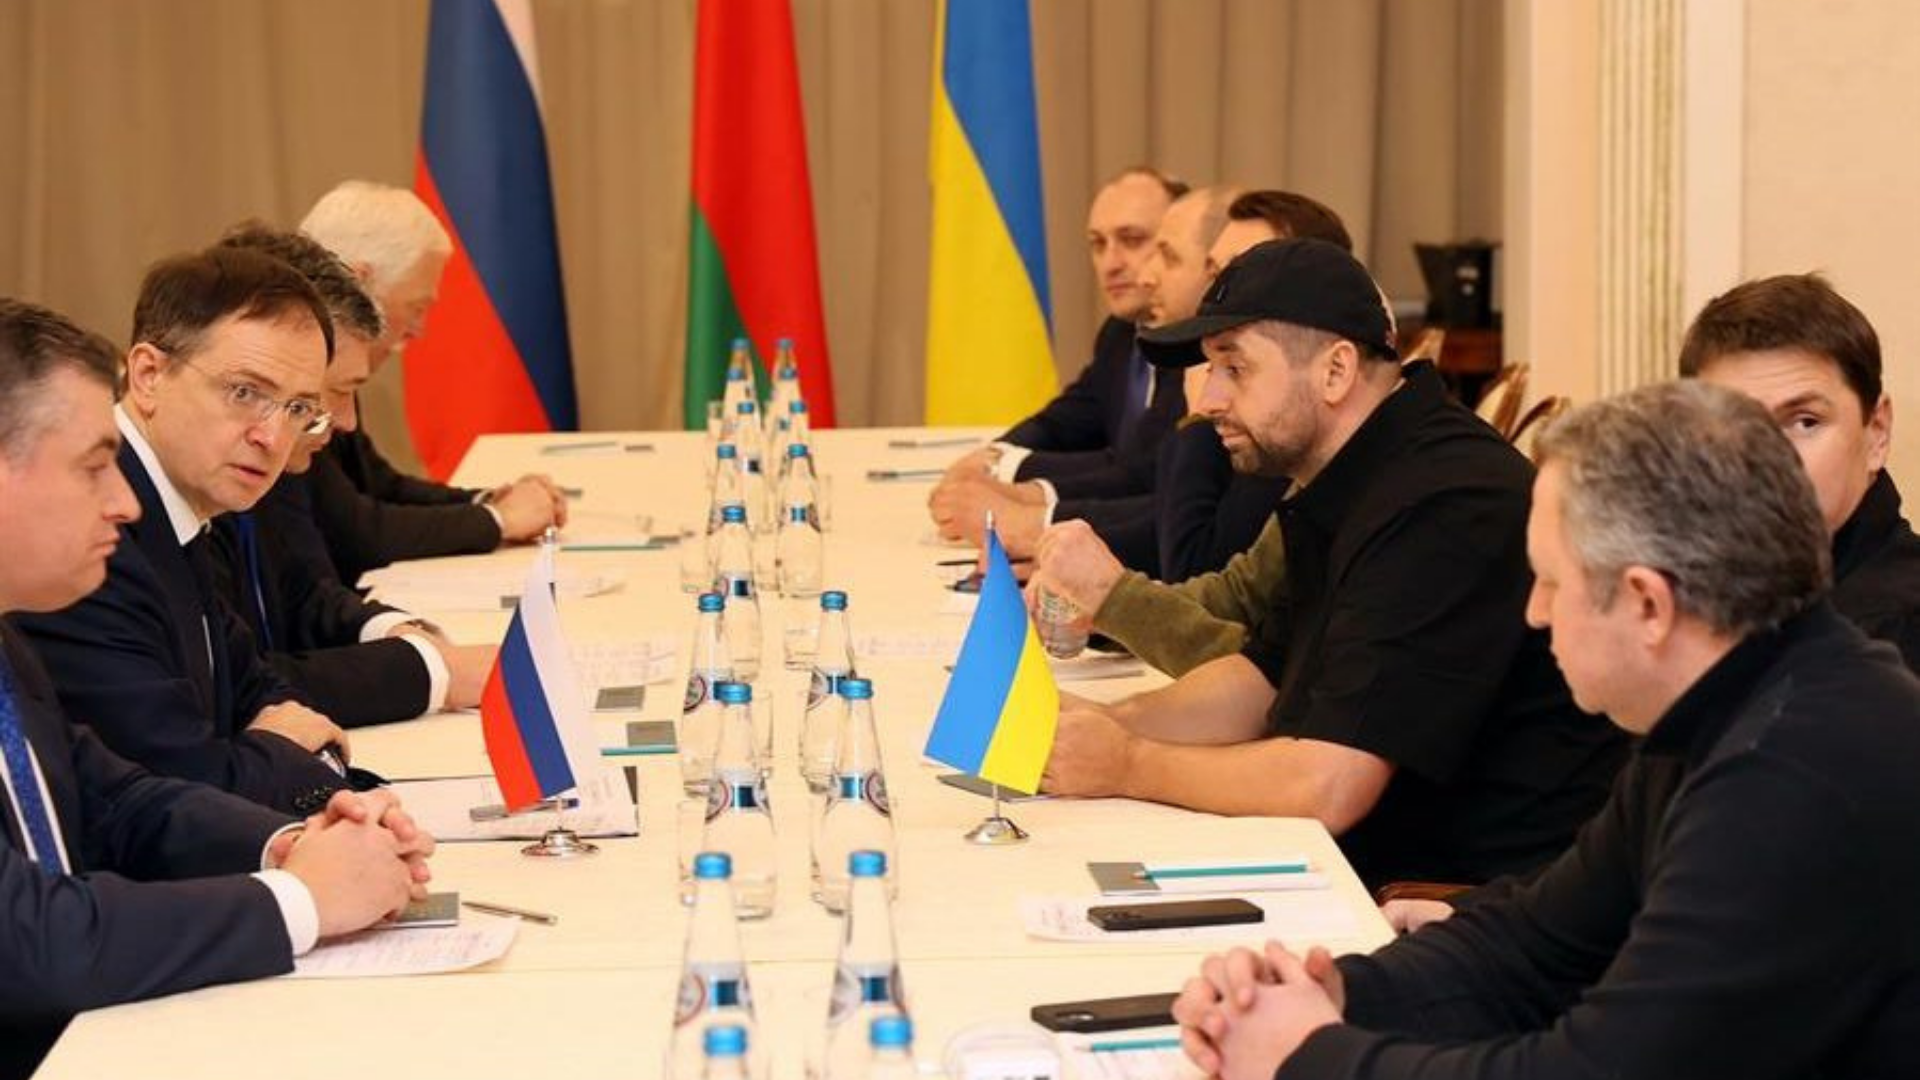 Terceira rodada de negociações entre Rússia e Ucrânia. Foto de representantes dos dois países em uma mesa.